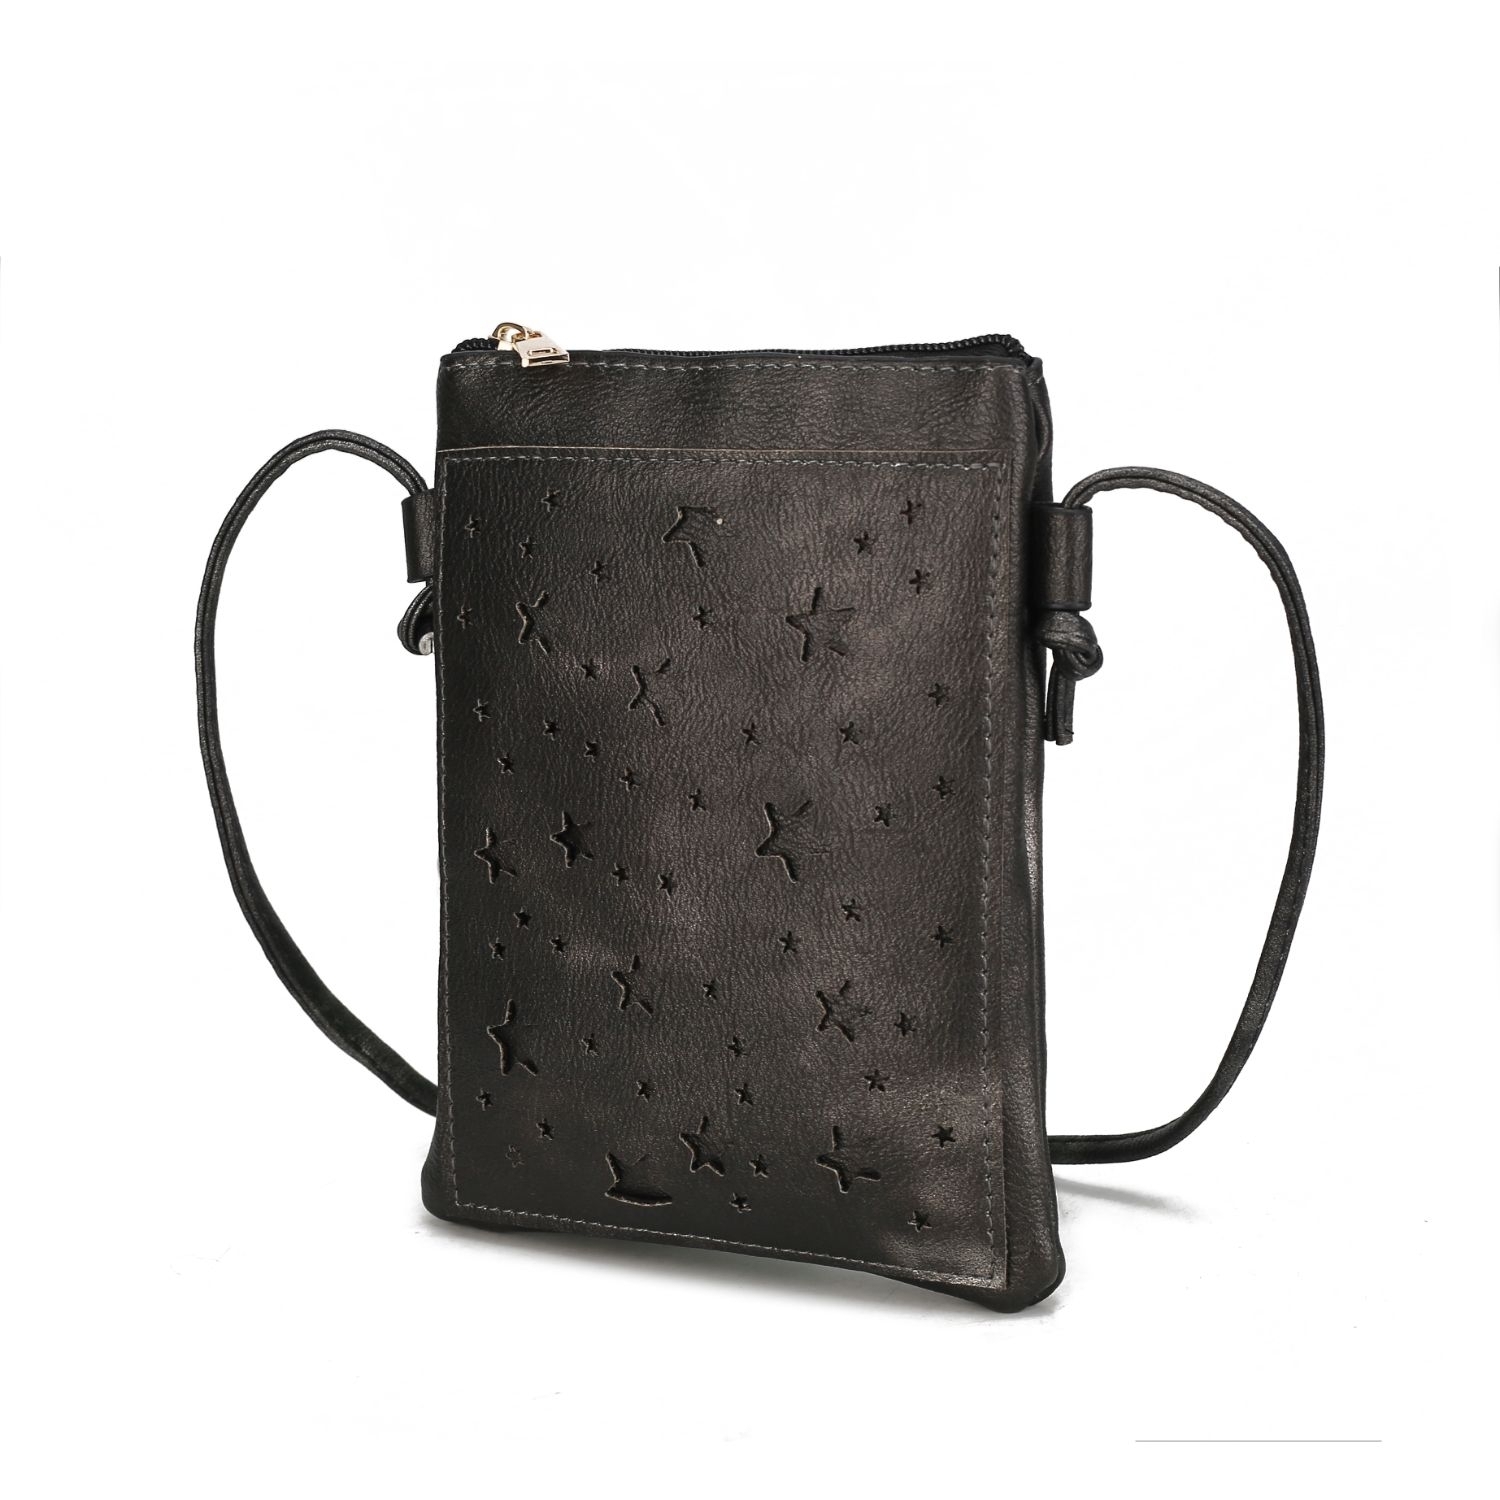 MKF Collection Jana Crossbody Handbag By Mia K. - Black